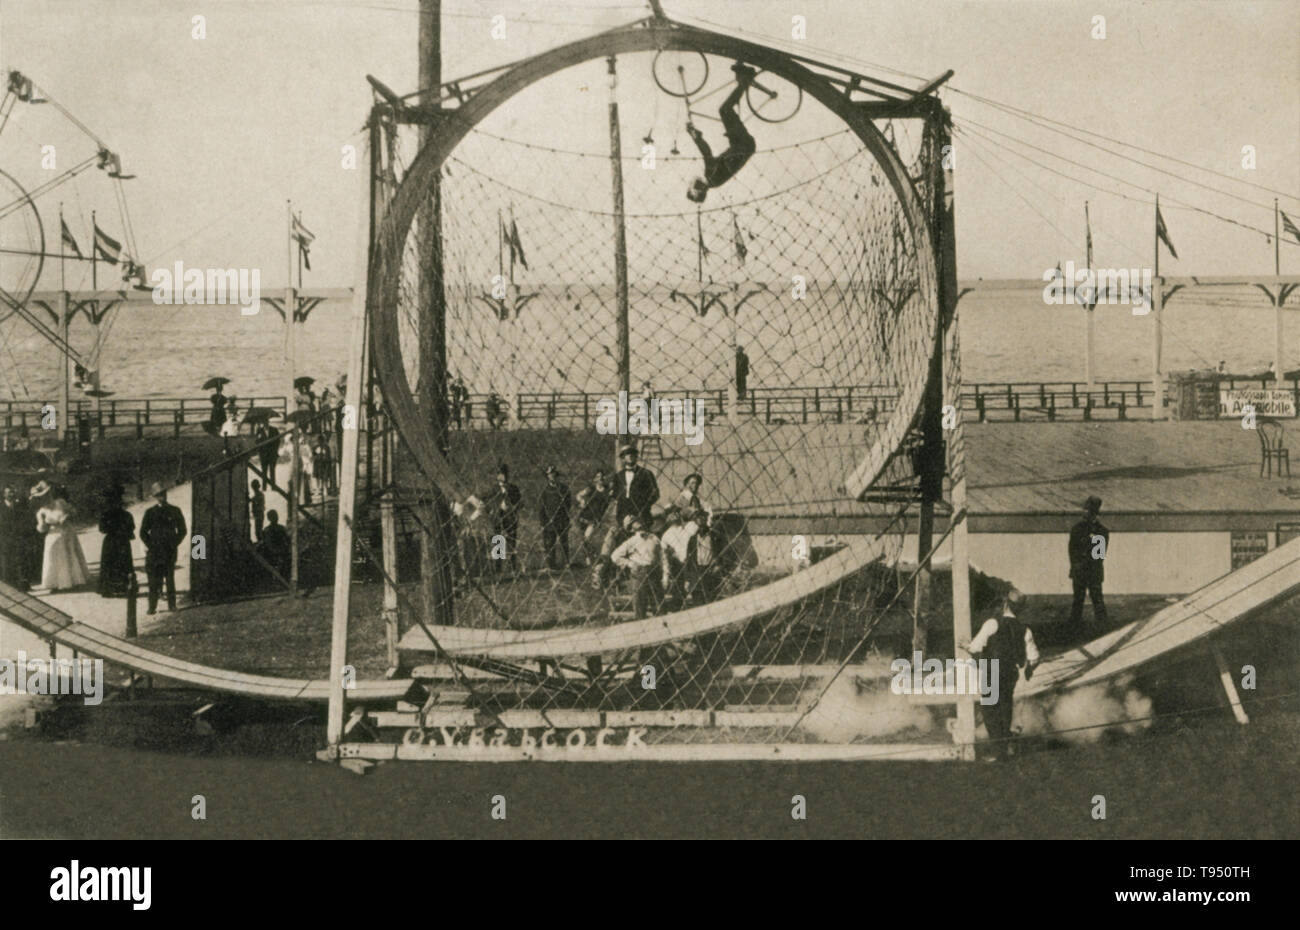 Intitulé : 'O.V. Babcock. Piège mortel en boucle la boucle. Le Parc de la plage de l'Ontario, N.Y." connu sous le nom de "Coney Island de l'ouest de New York, de l'Ontario de Charlotte' Beach Park était un divertissement populaire à la fin du xixe et au début du xxe siècle. La boucle la boucle stunt a été créé par un vélo daredevil qui portait le nom Allo Diavolo. Pour effectuer la boucle la boucle un stunt rider aurait monter à vélo autour d'une grande boucle en bois boucle d'appareil. Certains voudraient effectuer la boucle sur patins à roulettes et même dans une voiture. Banque D'Images